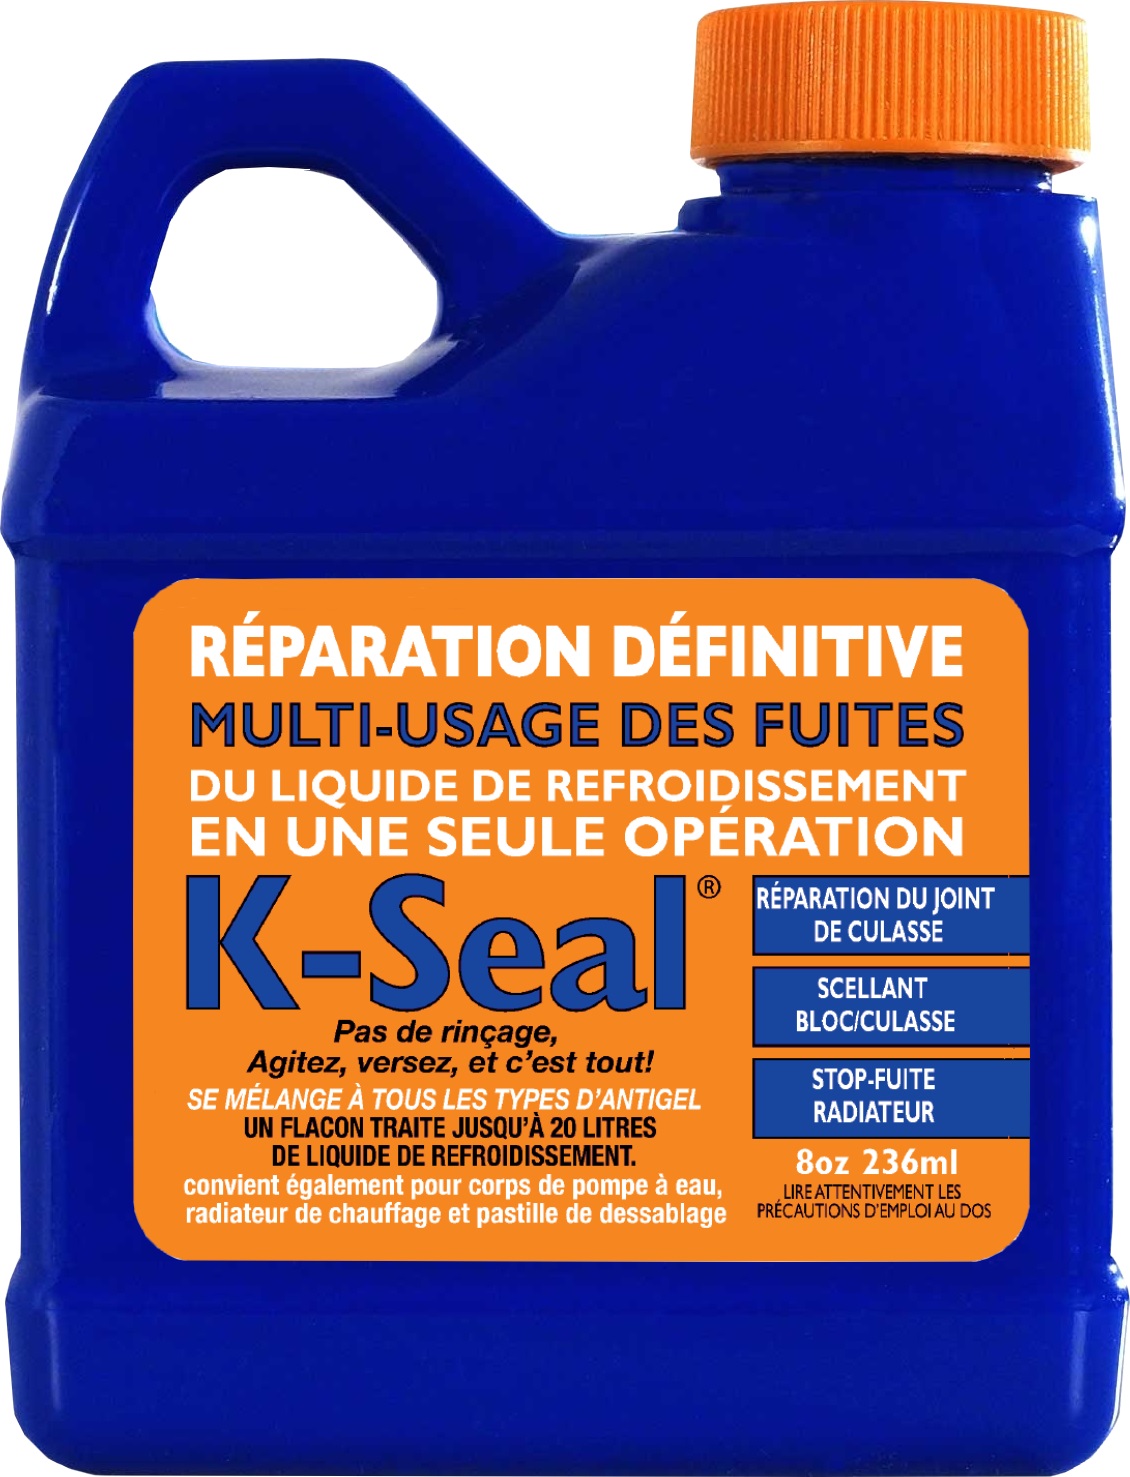 K-SEAL | ANTI FUITE | Réparation Définitive des Fuites du Liquide de Refroidissement | 236 ml | Réf : 5501